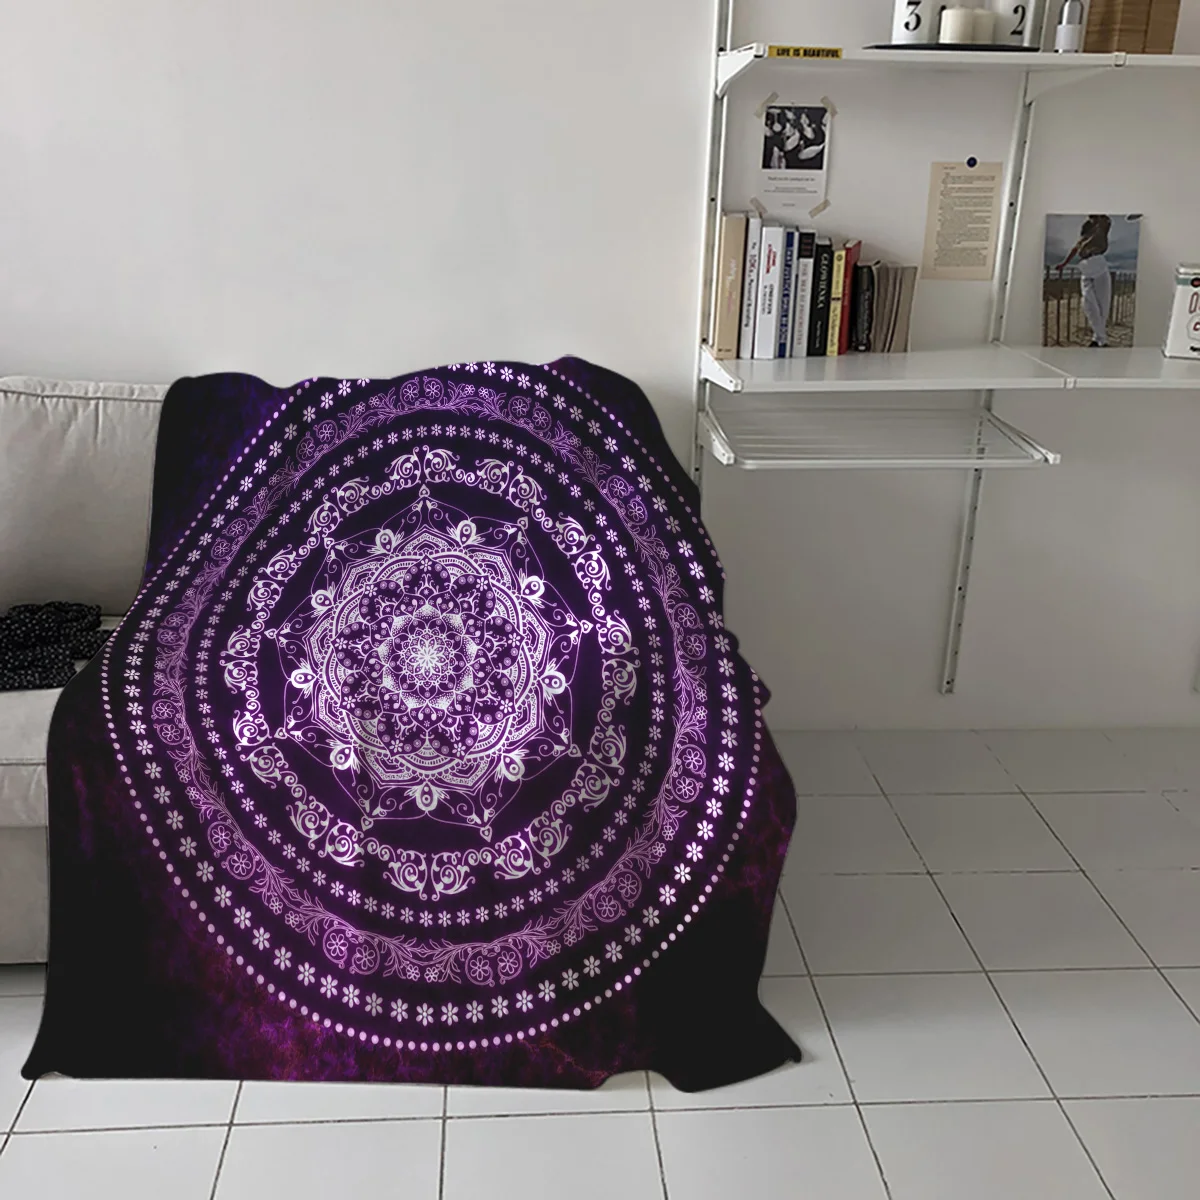 Фиолетовое светящееся одеяло с рисунком мандалы, мягкое удобное бархатное плюшевое одеяло, теплое одеяло для дивана, кровати